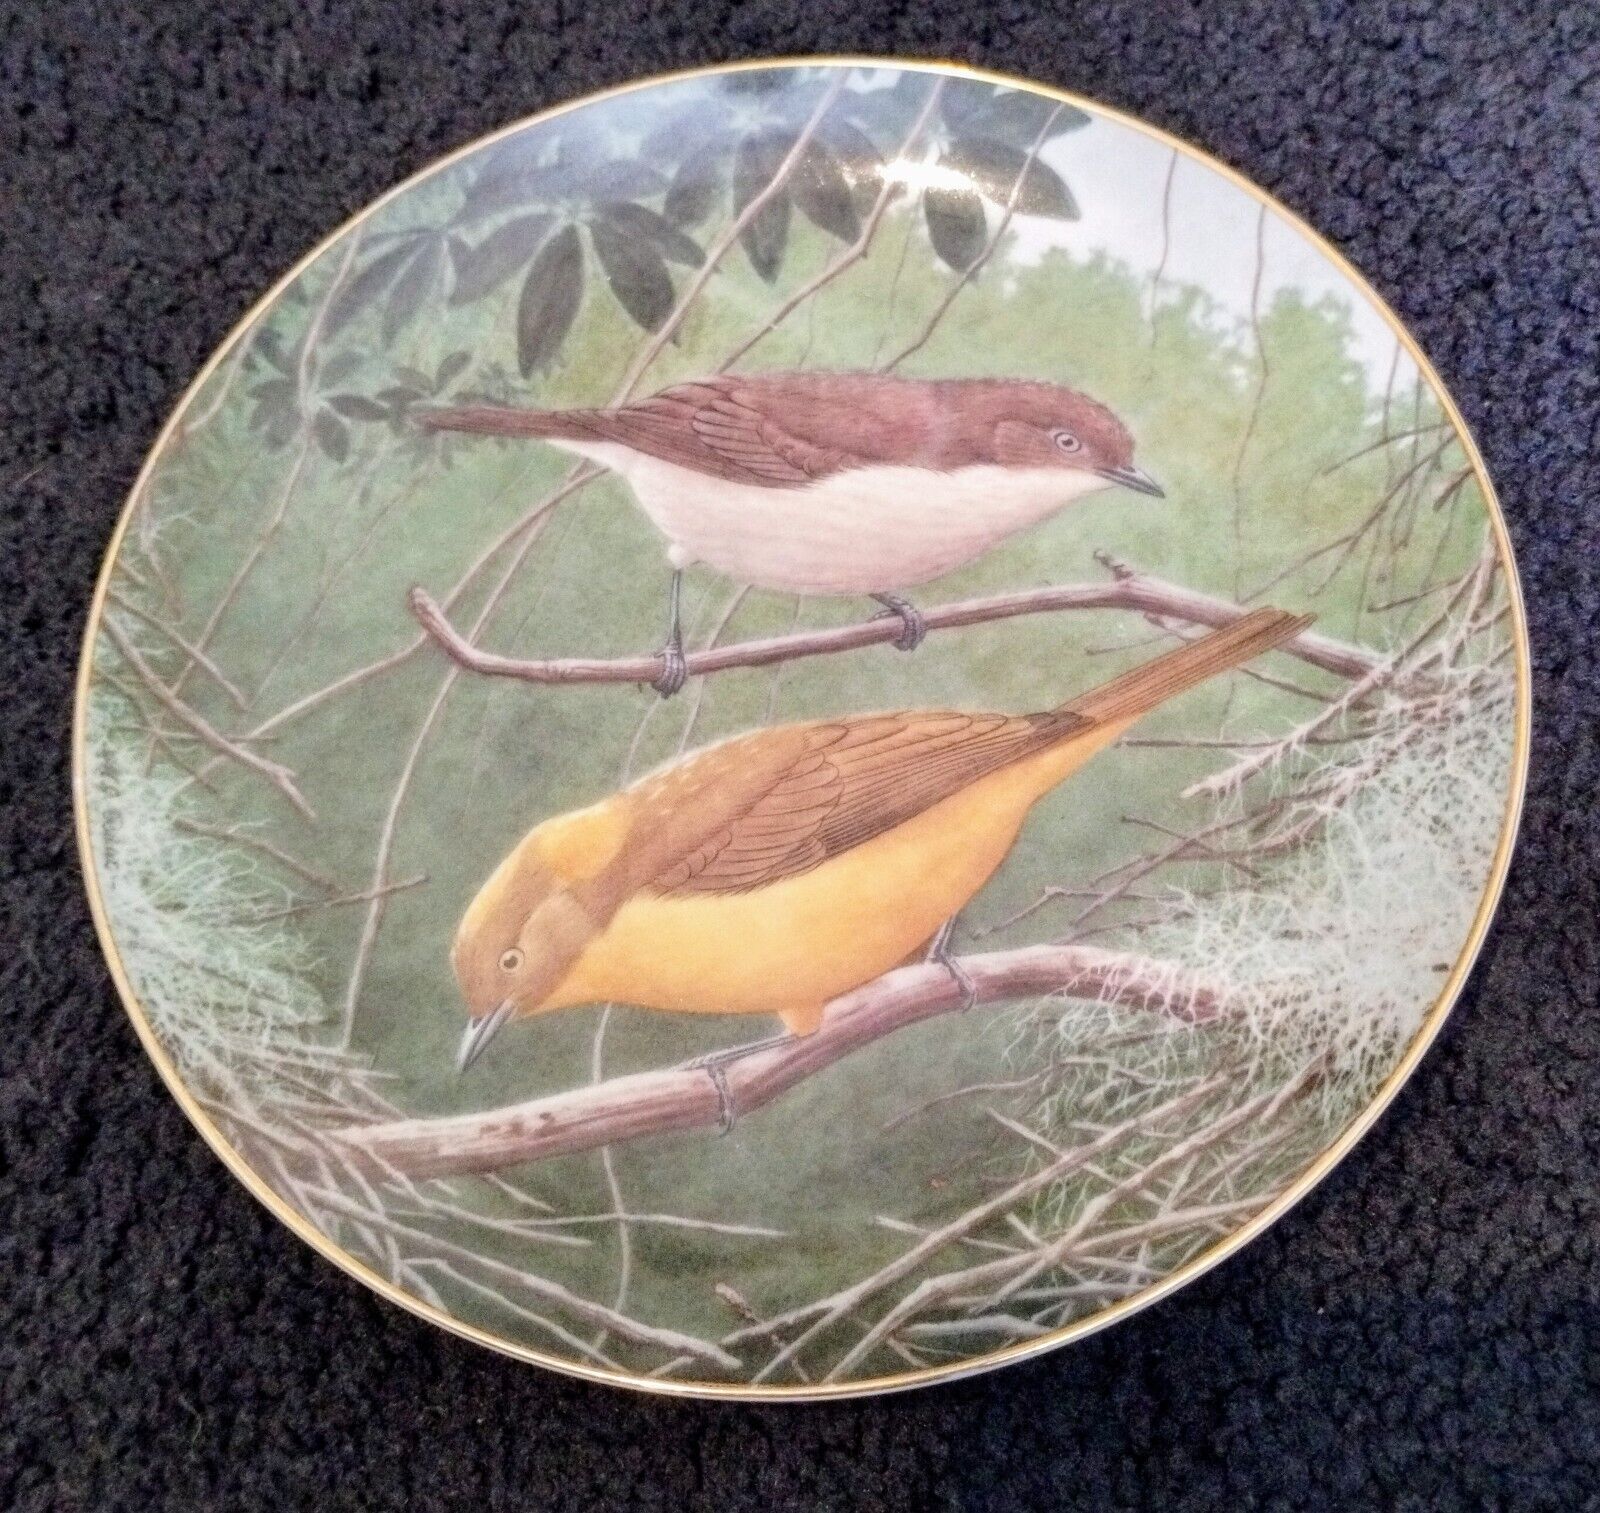 Golden BowerBird Decorative Bird Plate Wall Hanging, The World's Favorite